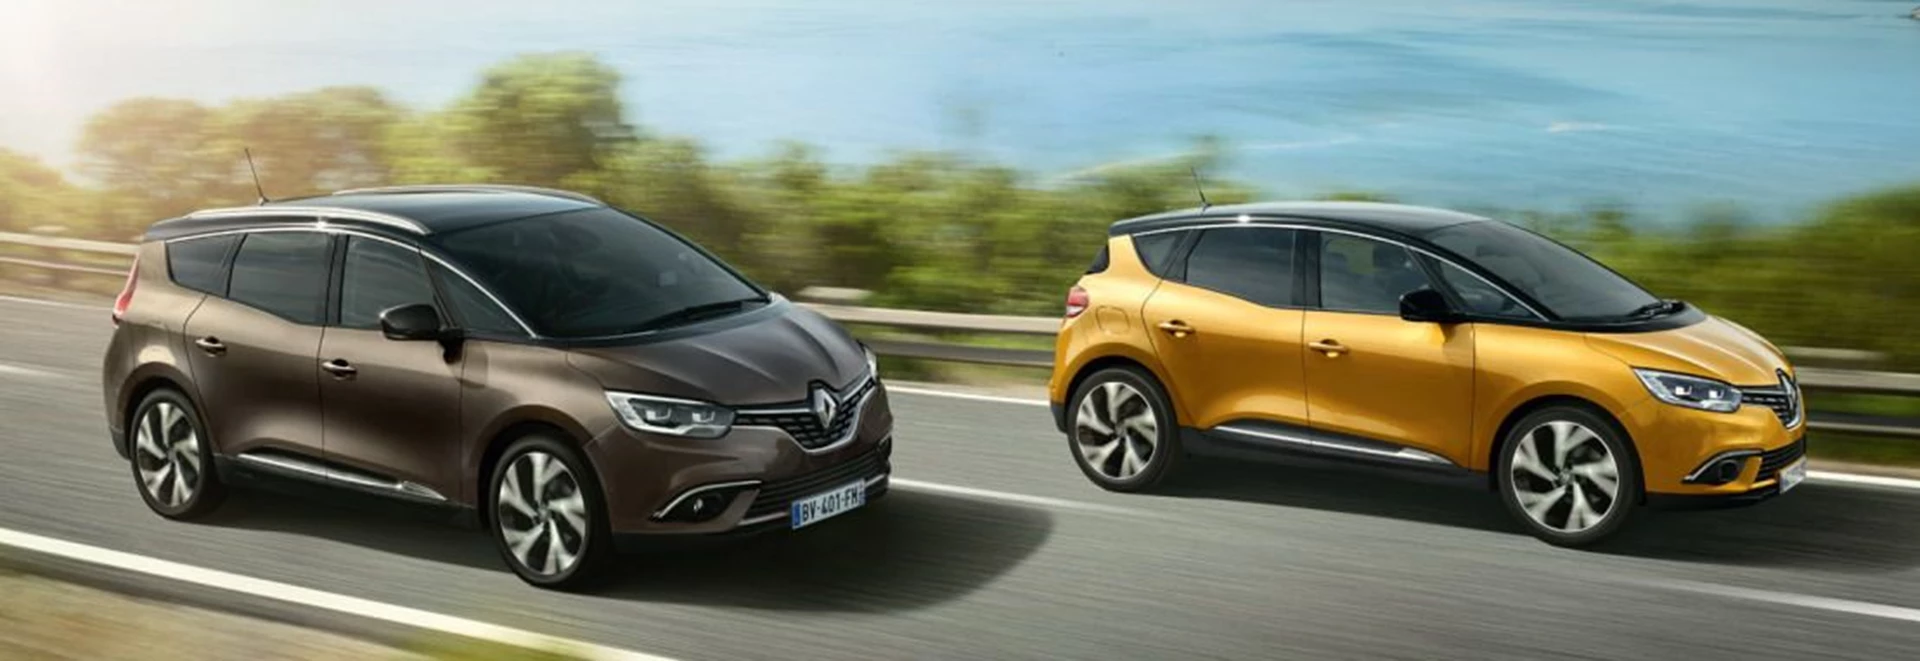 Renault considers killing off its diesel engines